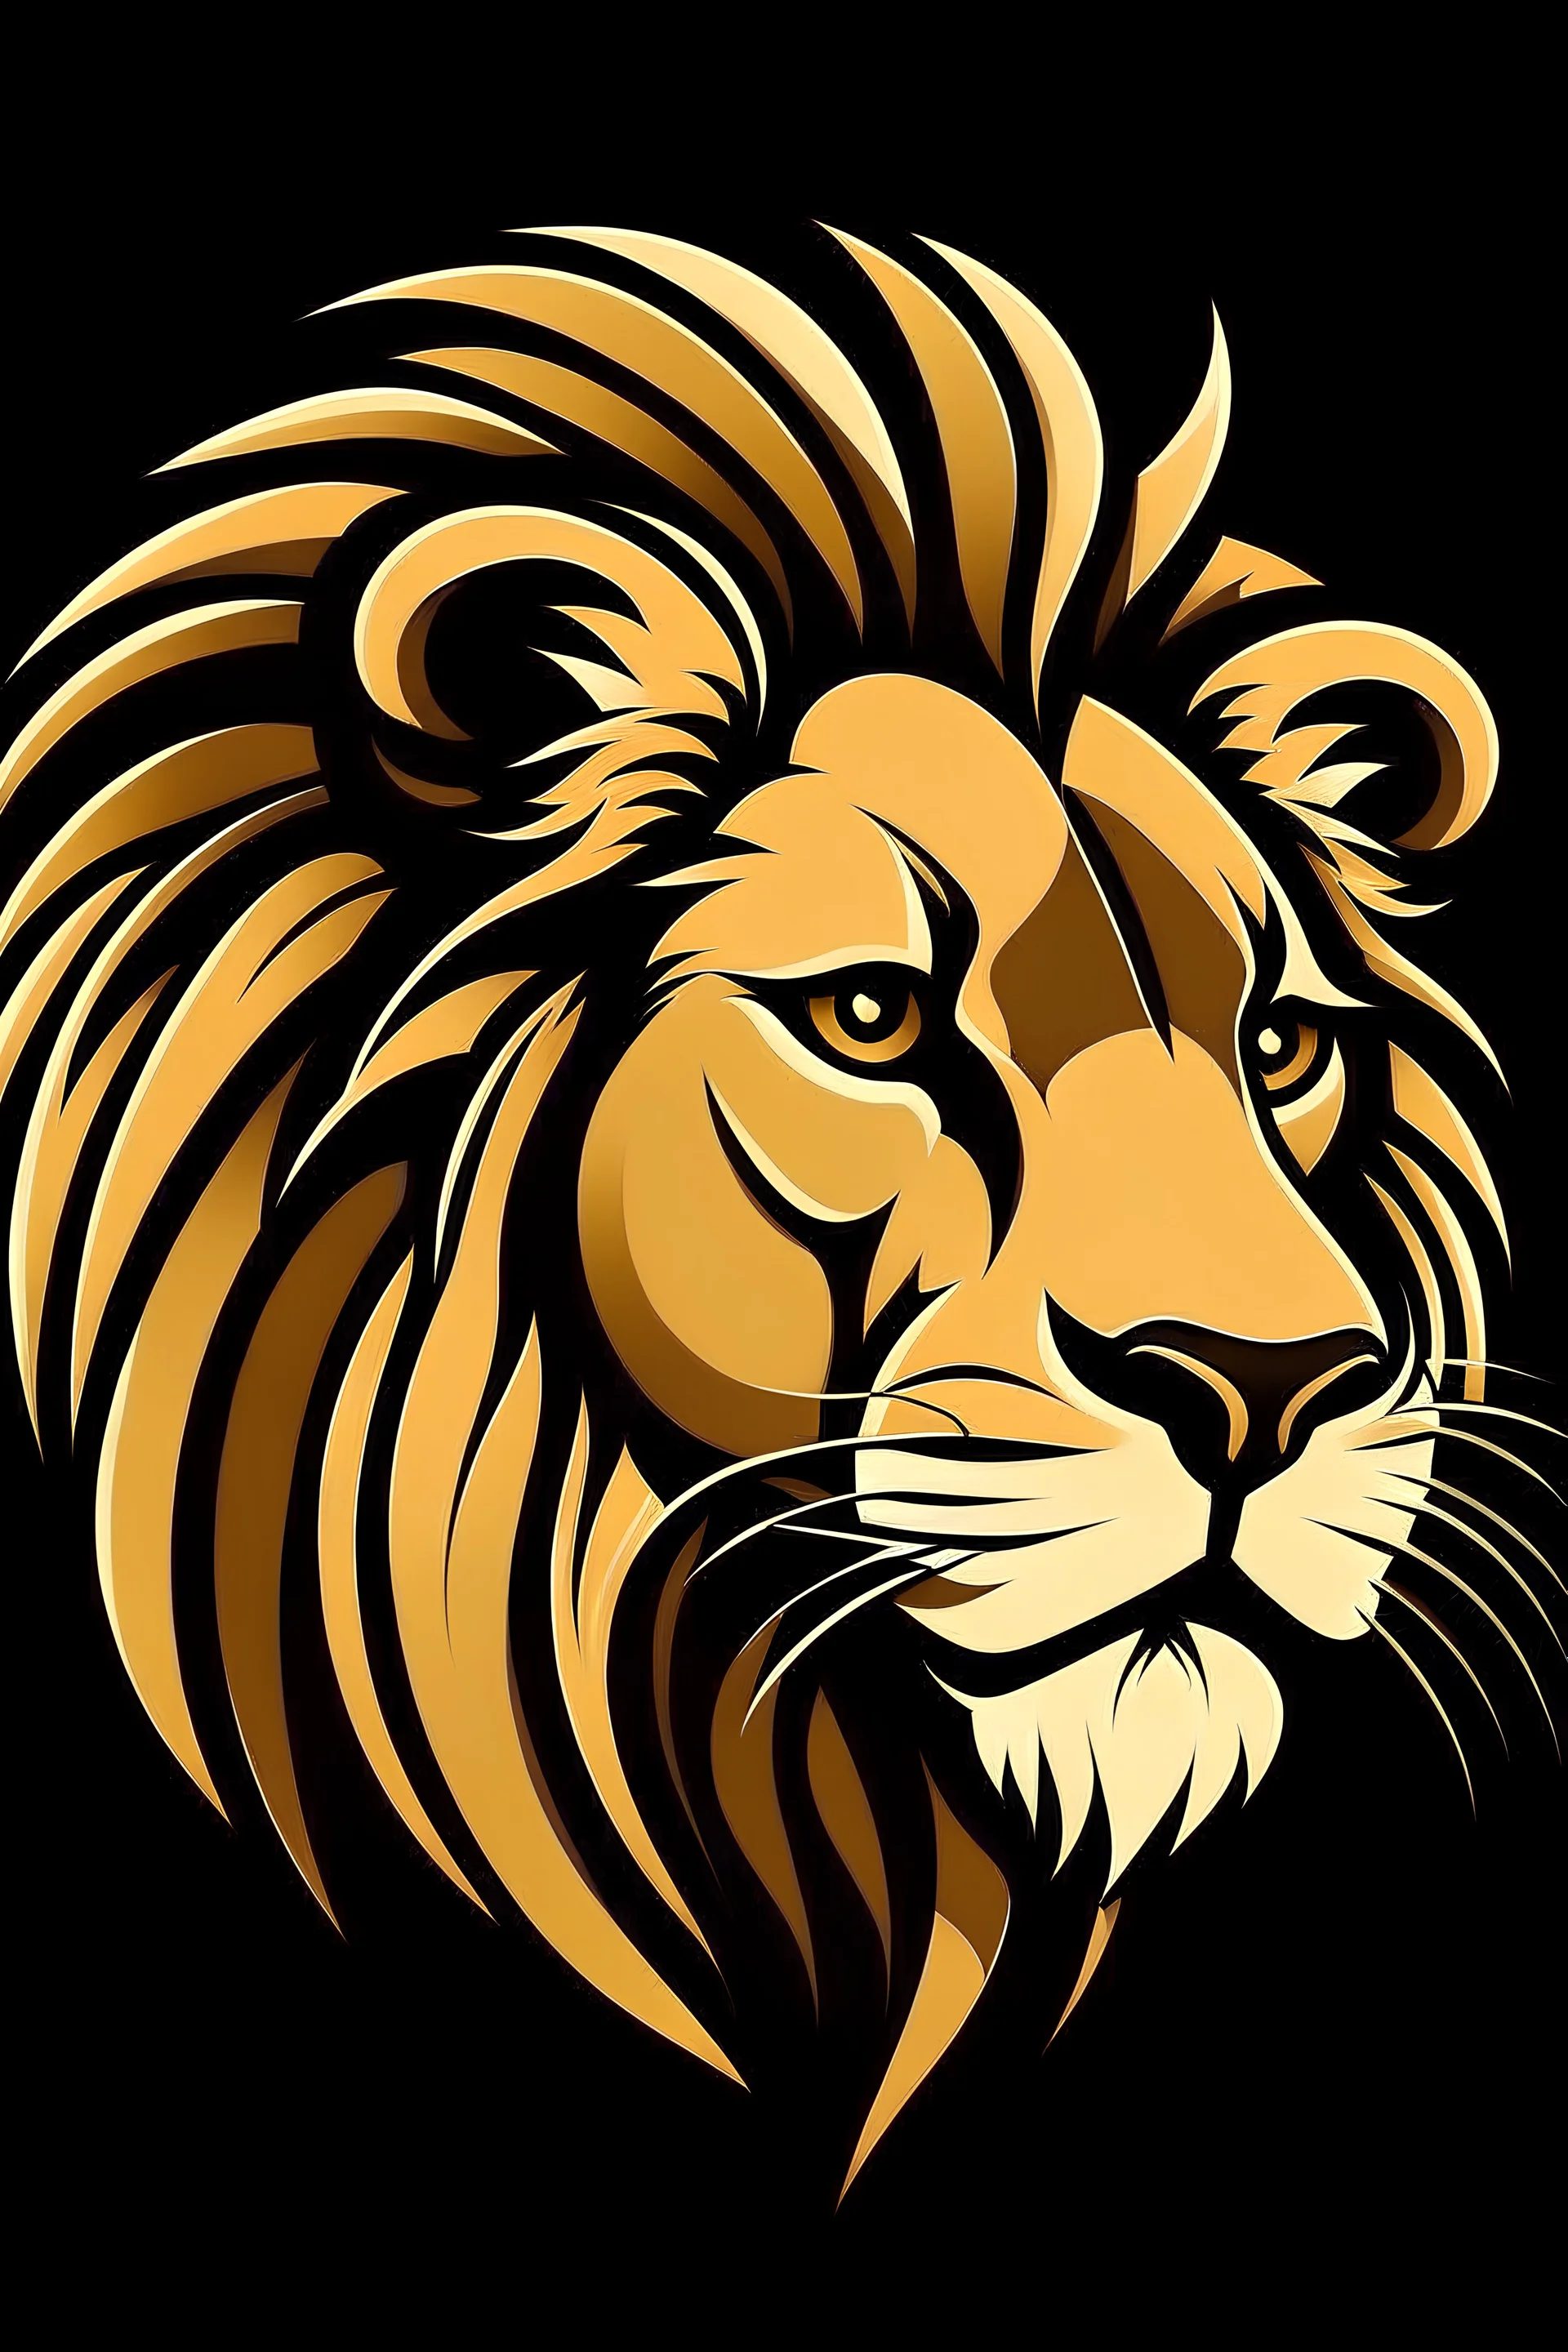 Black King Lion Label Logo Illustration Stock Vector, 49% OFF